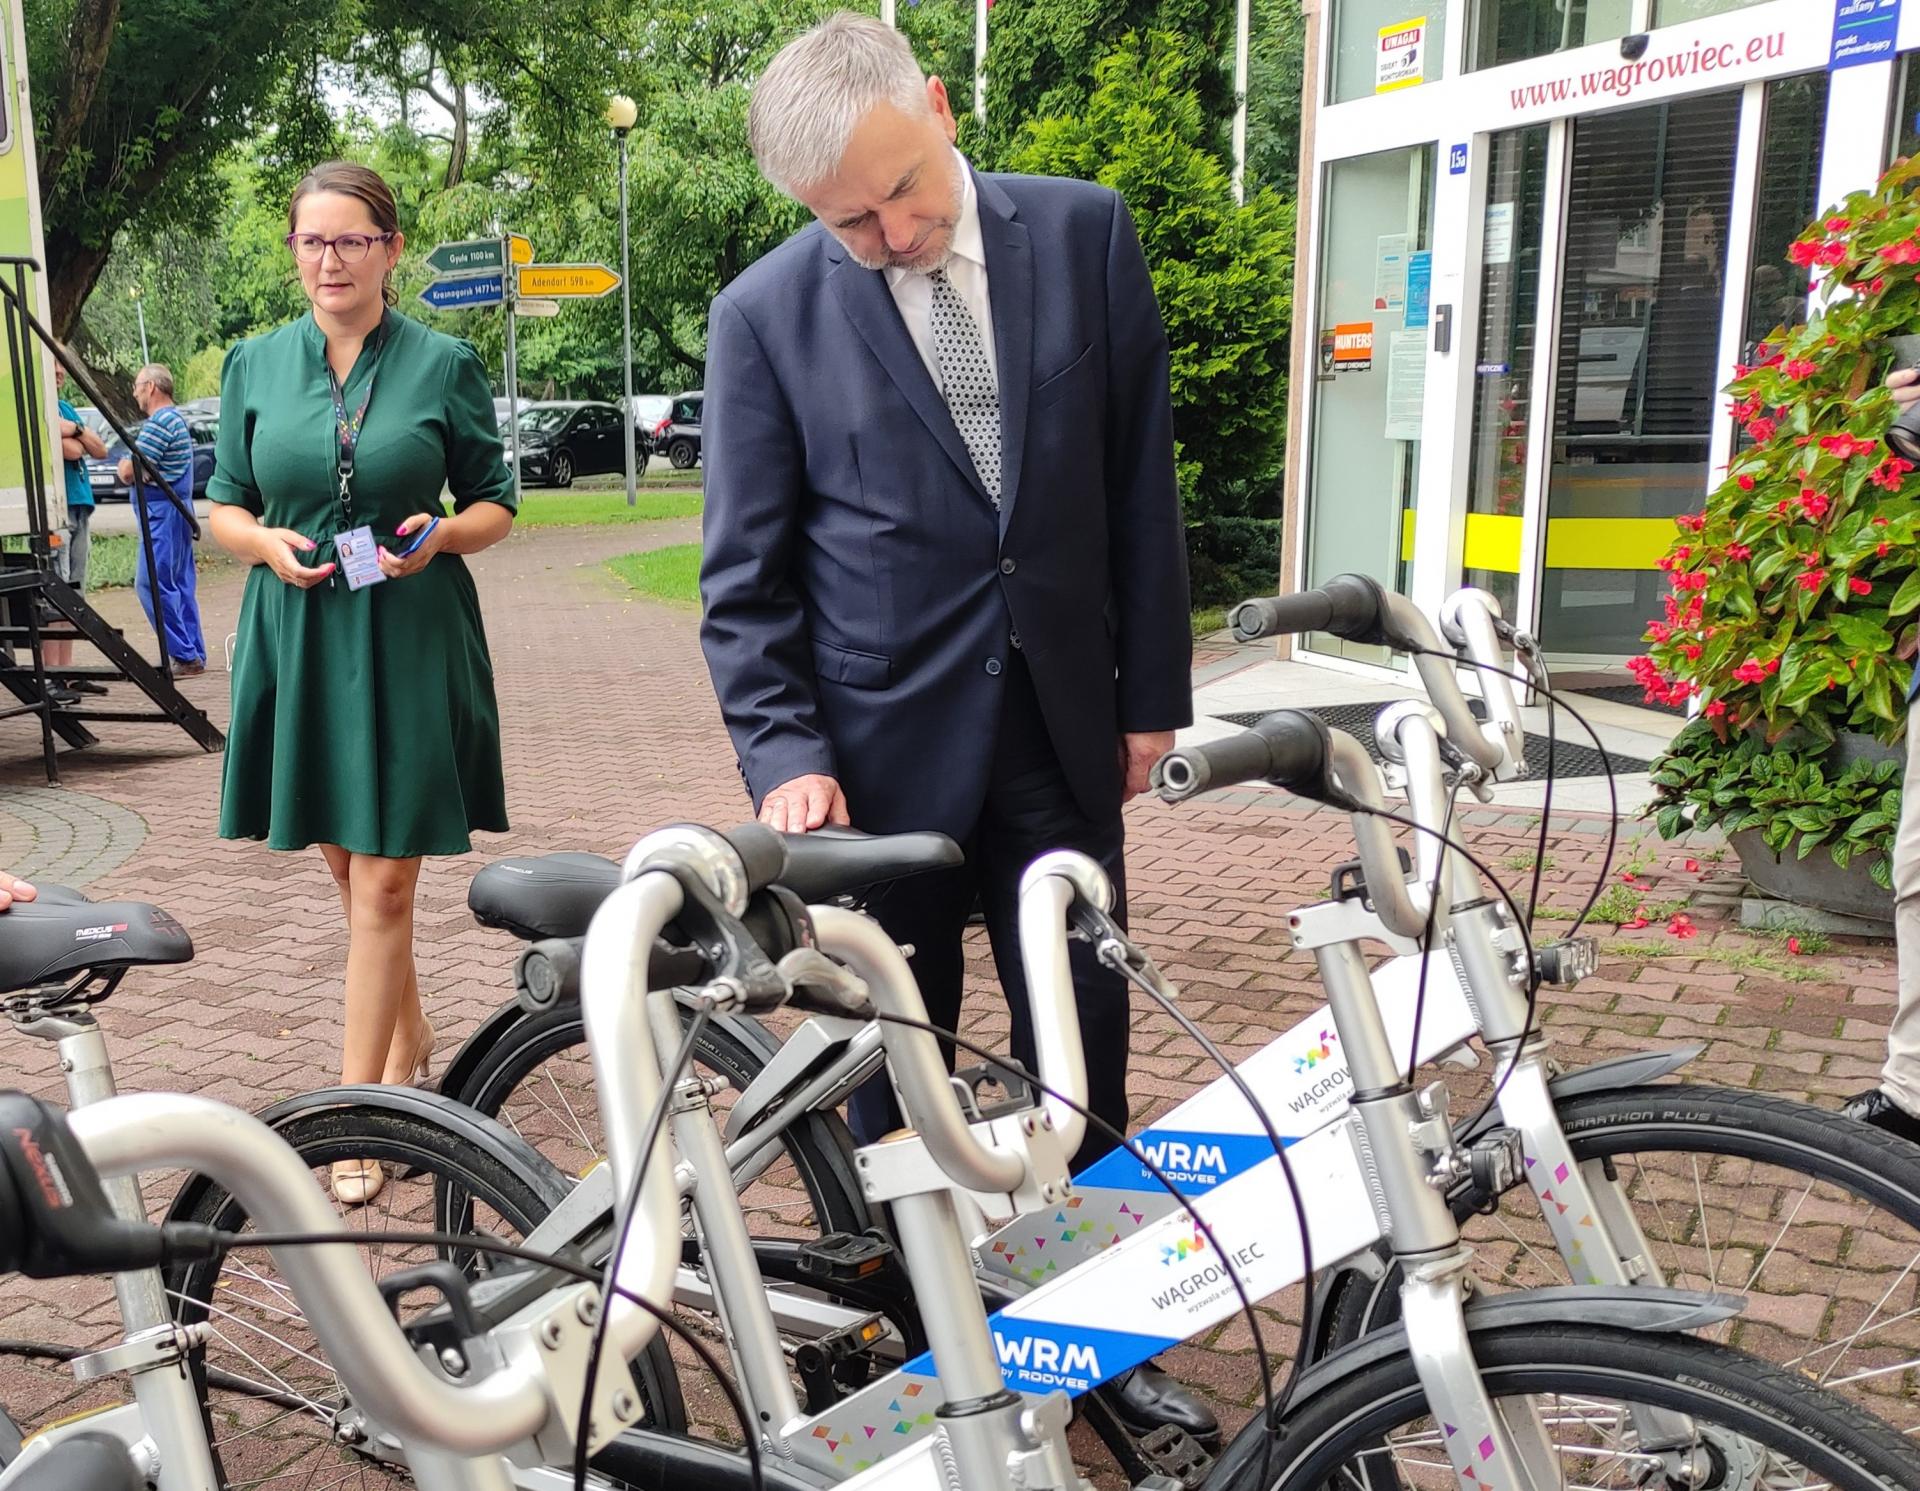 Marszałek  podpisał umowy na unijne miliony dofinansowania na kształcenie zawodowe i budowę ścieżek rowerowych  - zobacz więcej